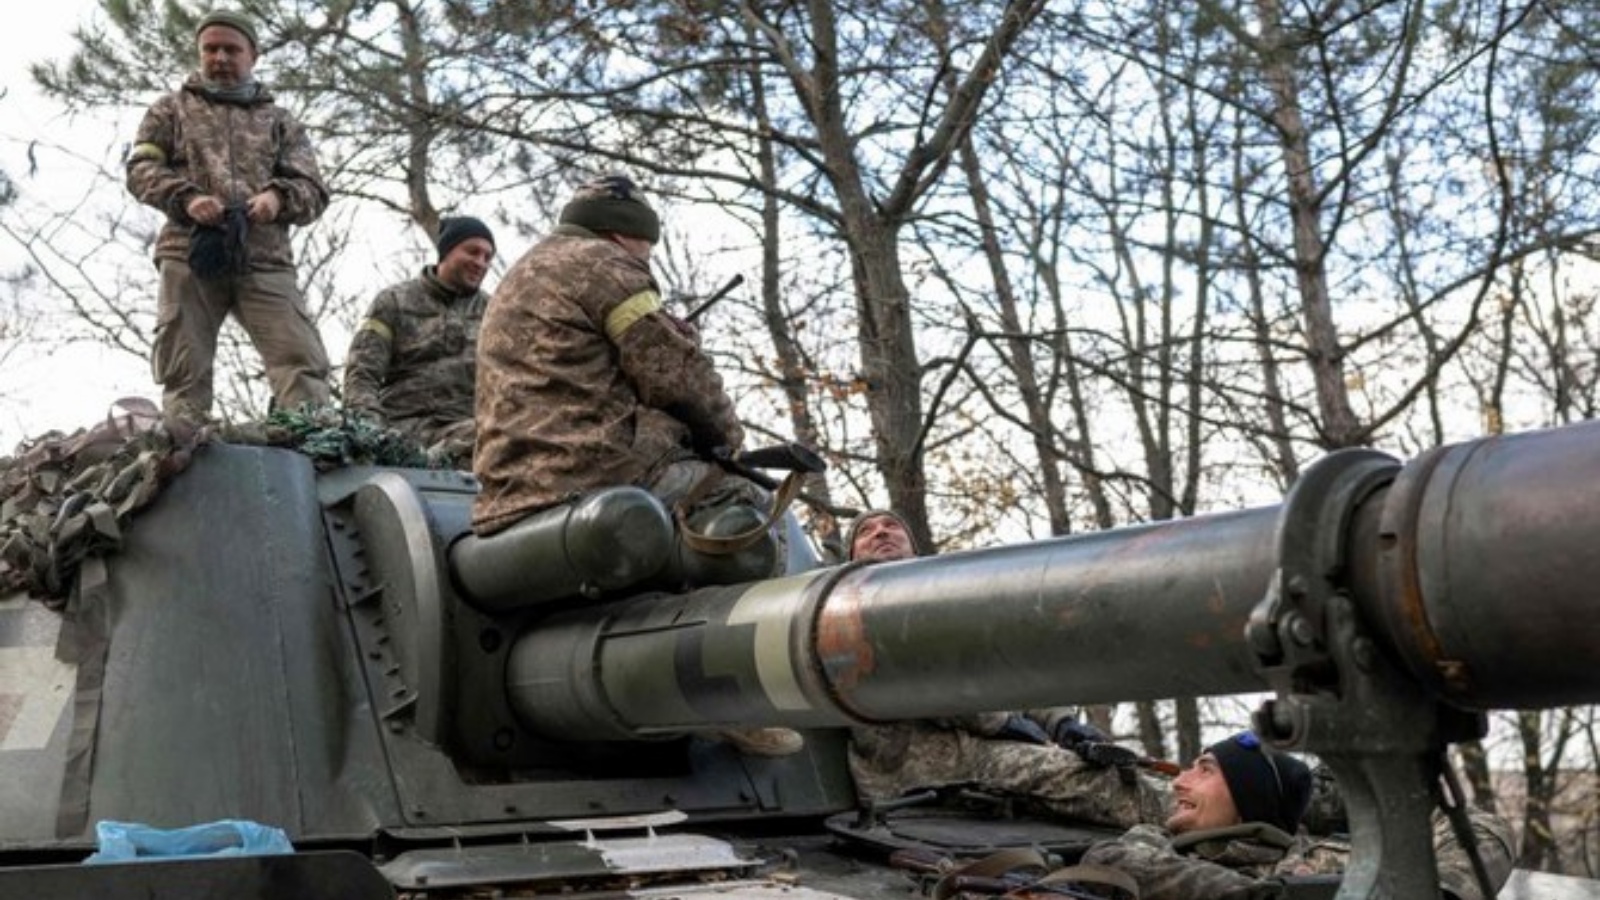 يستعد أفراد وحدة المدفعية الأوكرانية لإطلاق النار باتجاه خيرسون يوم الجمعة خارج منطقة خيرسون ، وسط الغزو العسكري الروسي لأوكرانيا